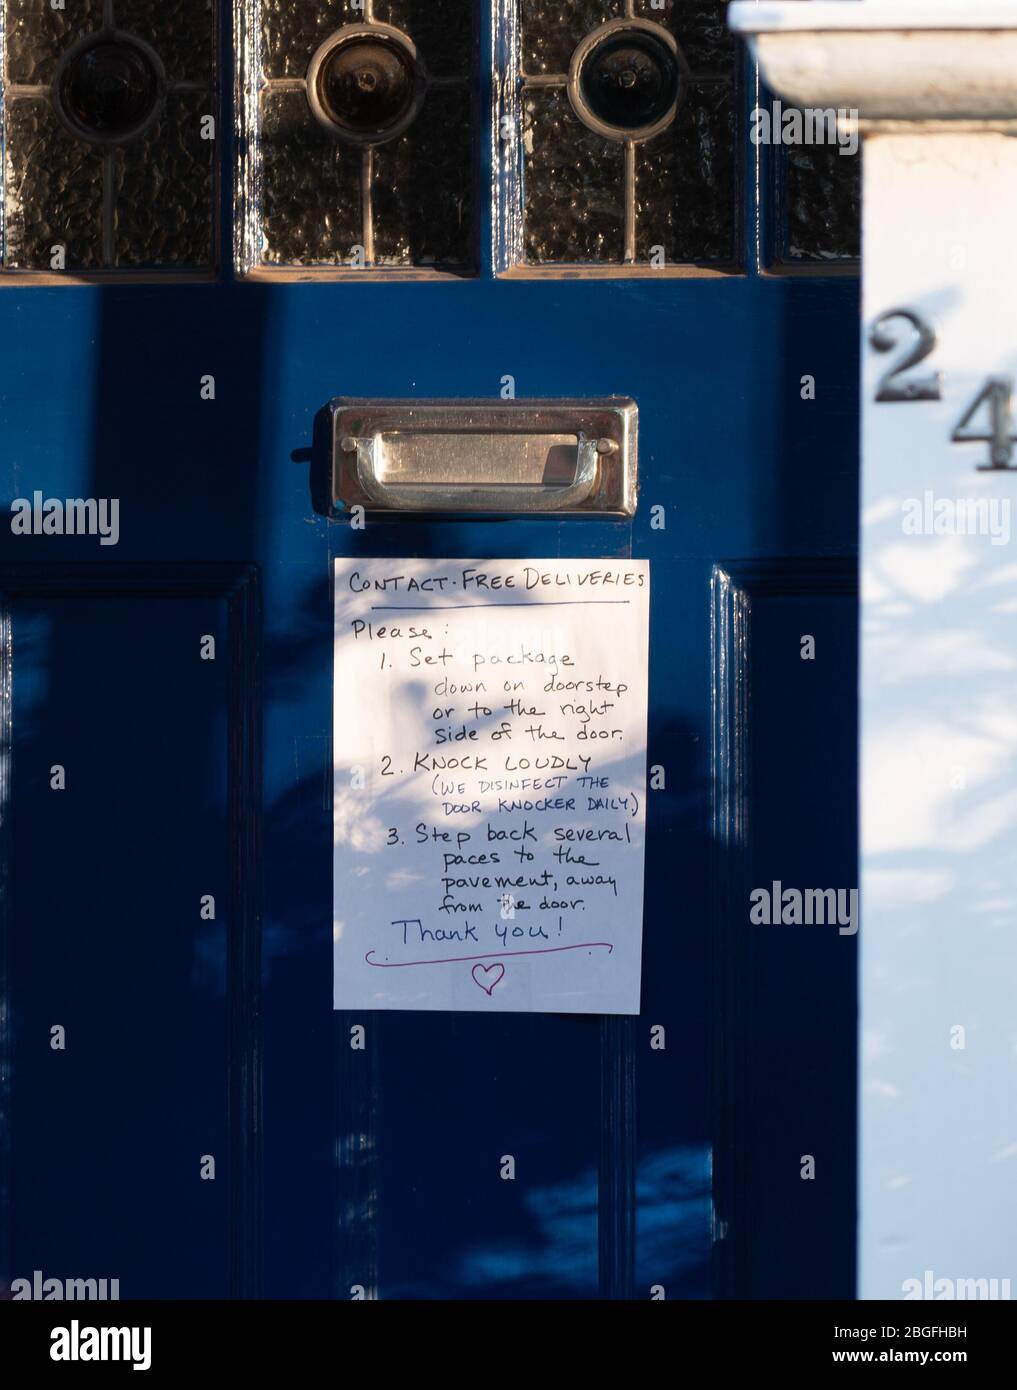 Un aviso en la puerta principal con instrucciones para entregas seguras durante la crisis de contagio de Covid-19 en Ealing, Londres. Fecha de la foto: Domingo, 19 de abril, 2 Foto de stock